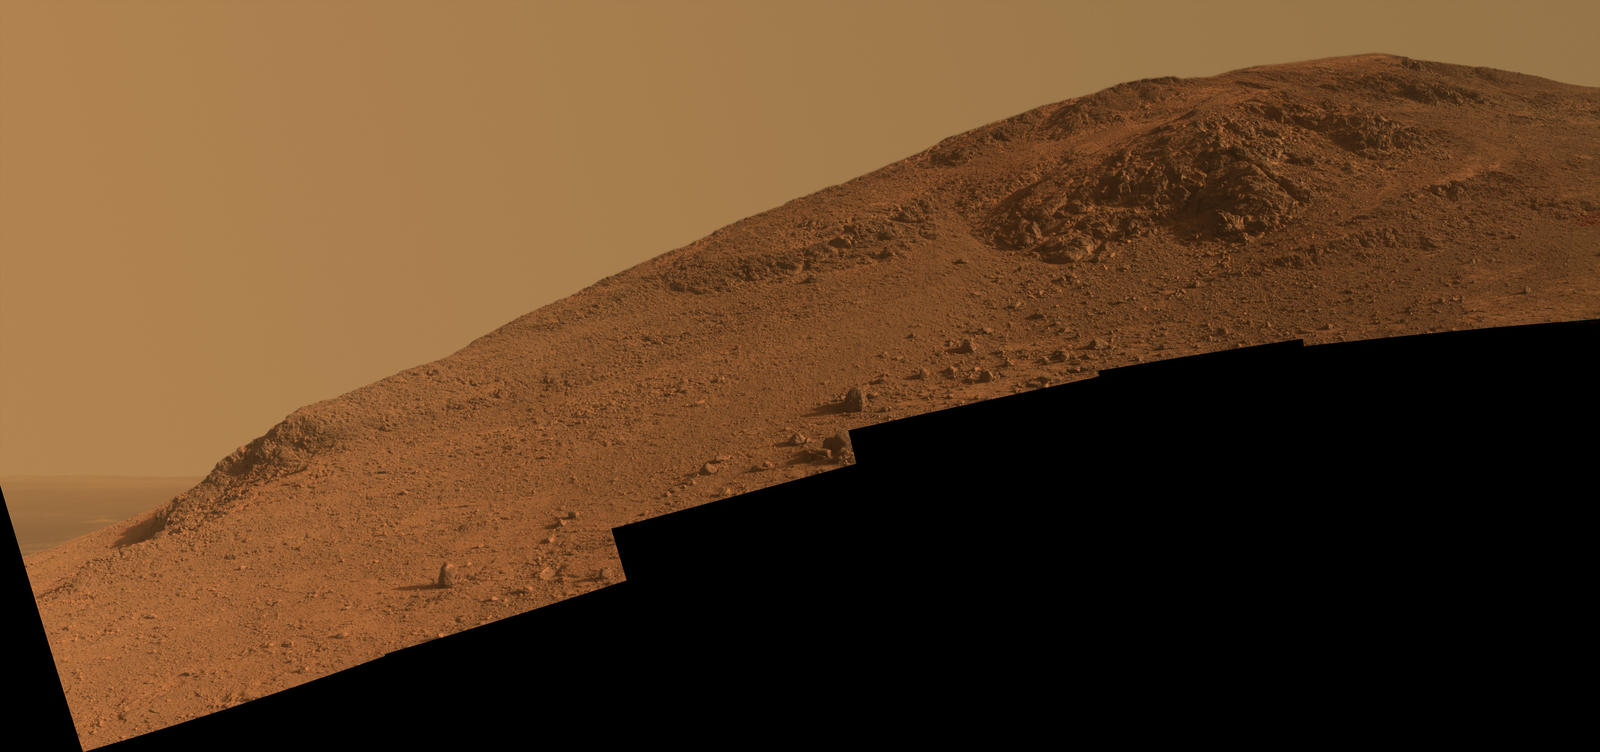 Steep 'Knudsen Ridge' Along 'Marathon Valley' on Mars